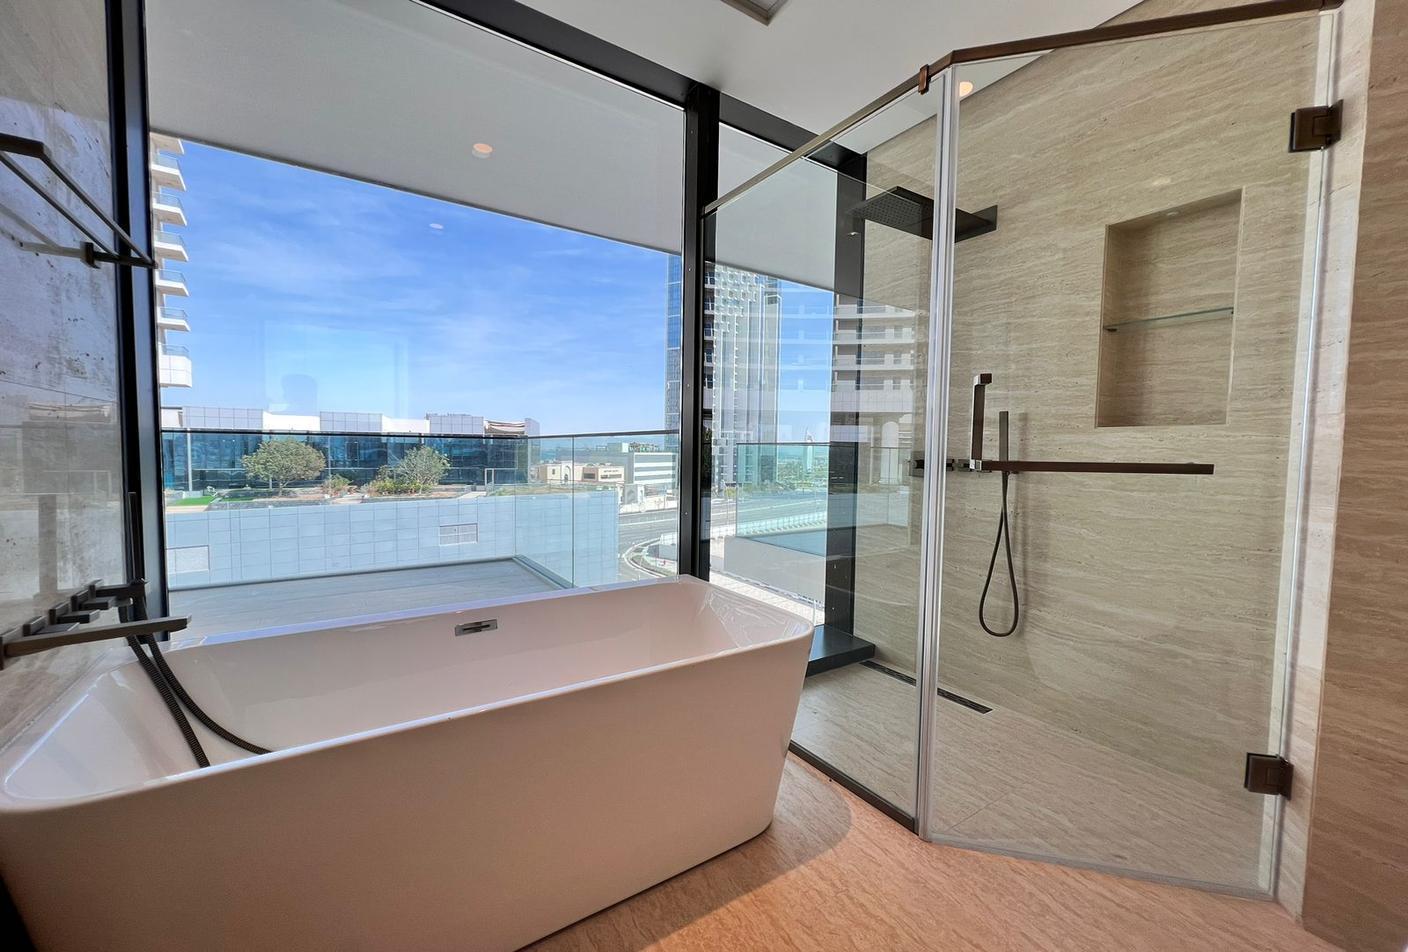 2 bed, 4 bath Hotel & Hotel Apartment for sale in One Reem Island, Shams Abu Dhabi, Al Reem Island, Abu Dhabi for price AED 2415000 